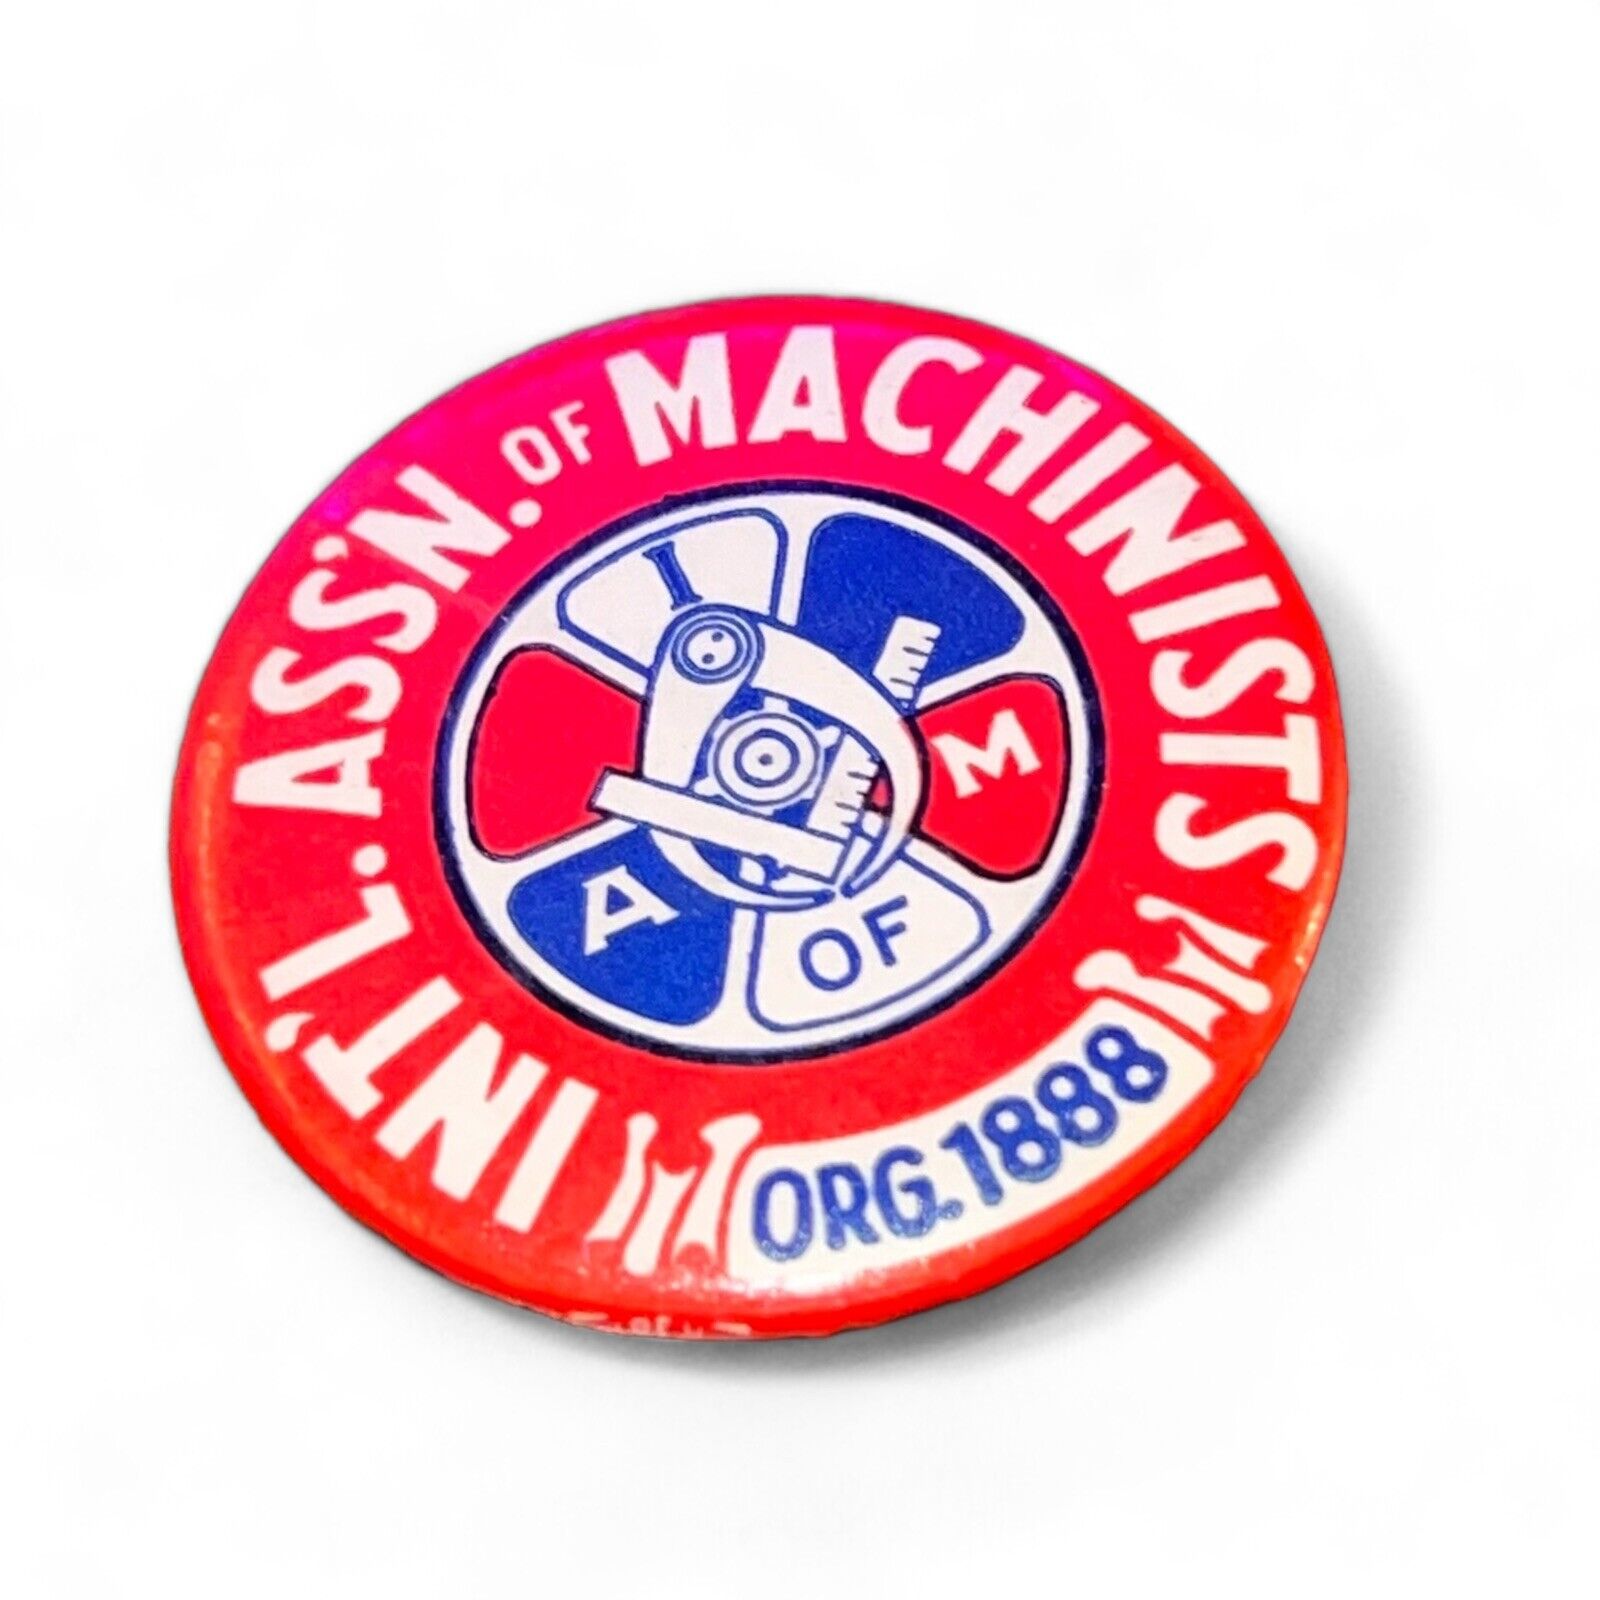 VTG International Association Of Machinist 1888 Button Pin